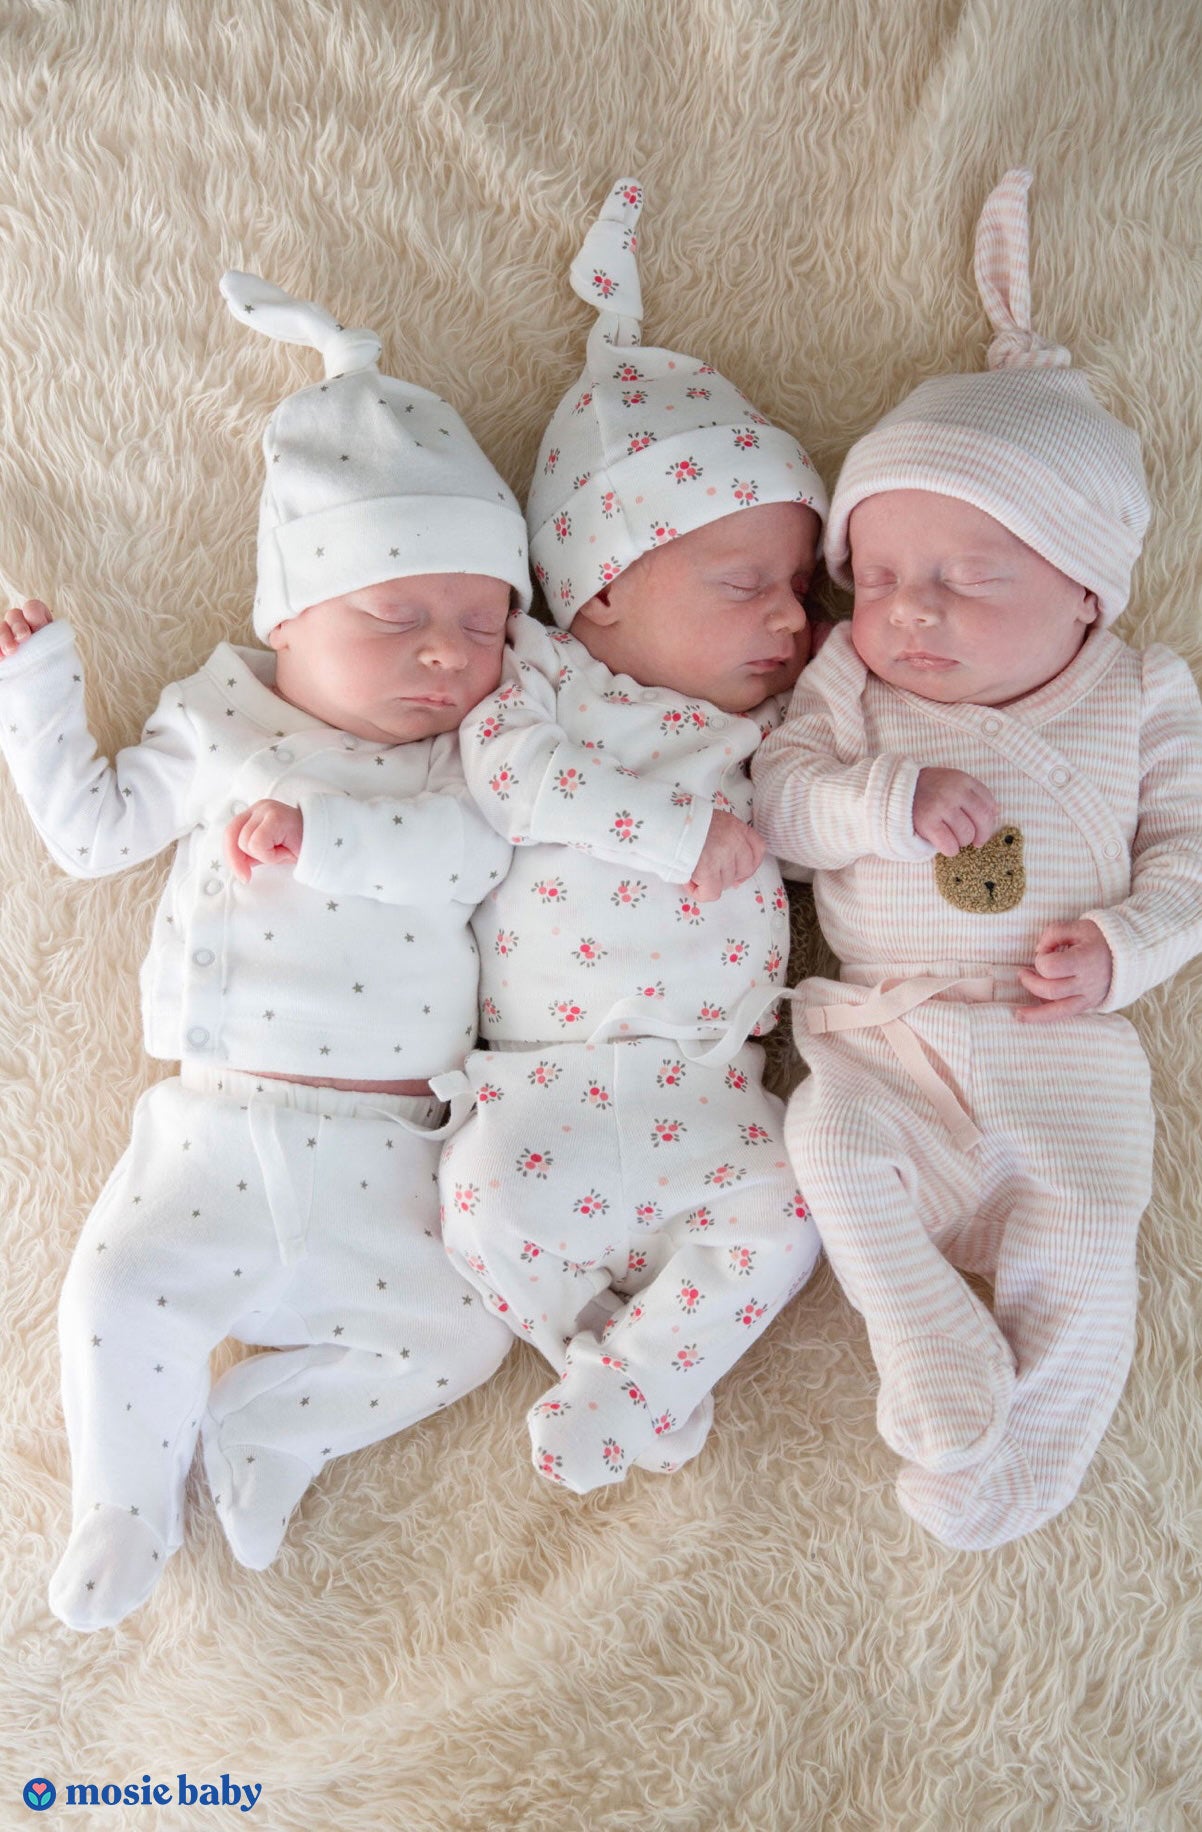 newborn triplets sleeping